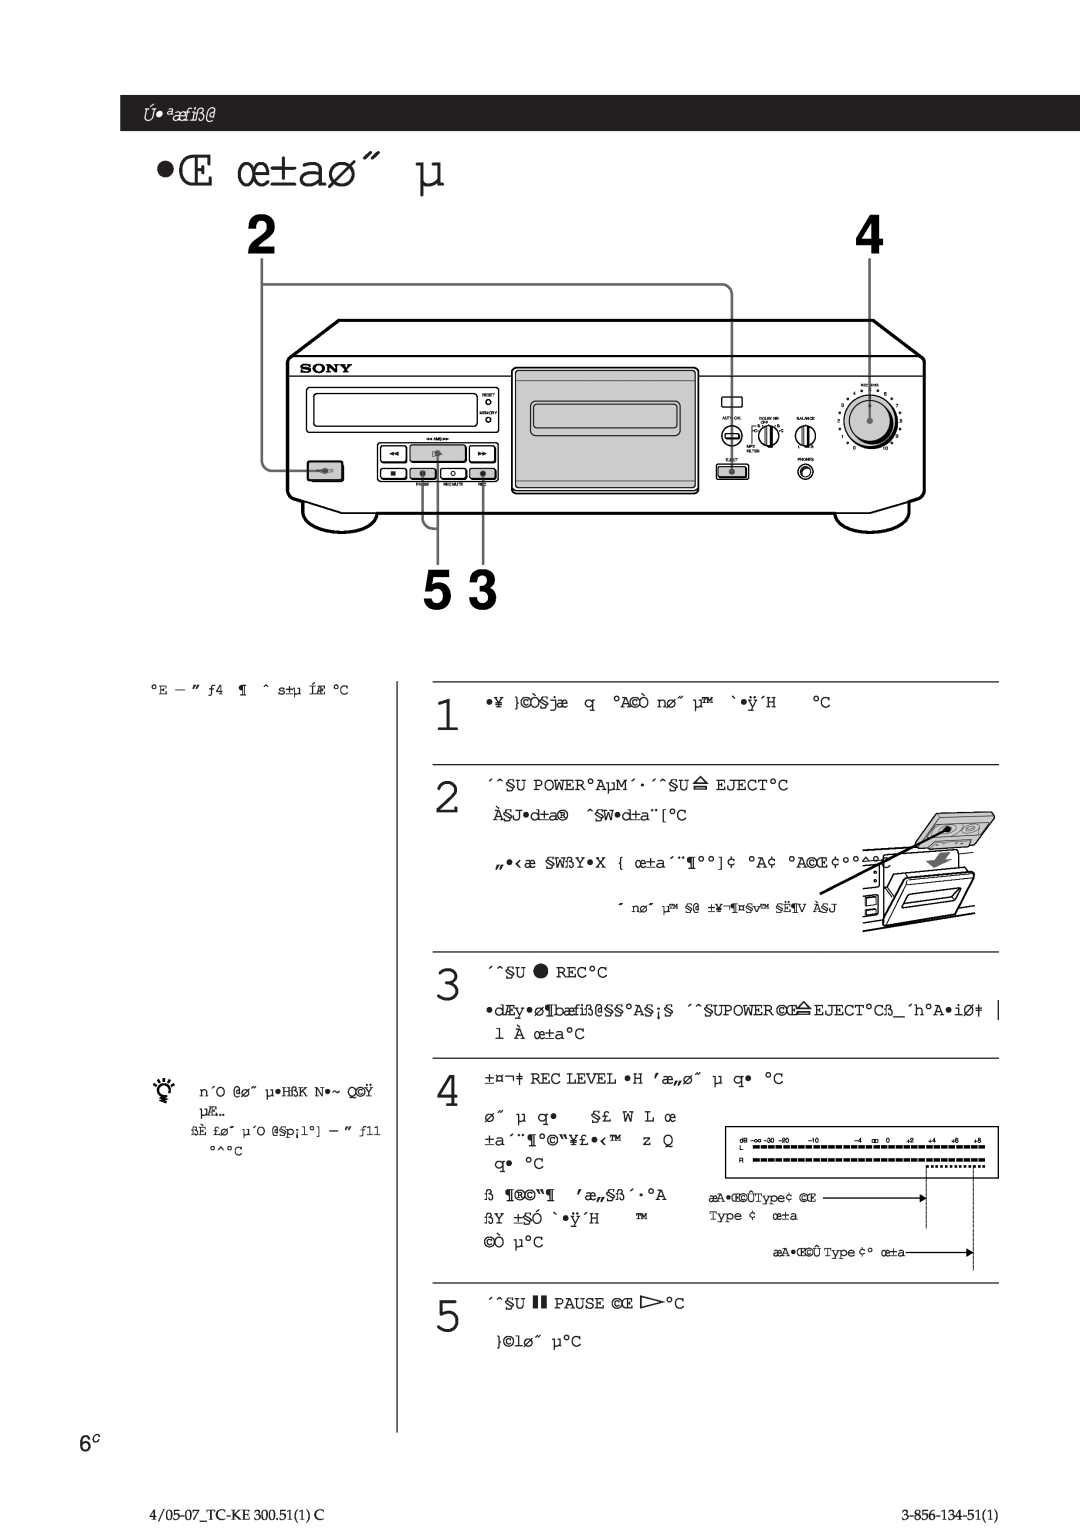 Sony TC-KE300 operating instructions Œ œ±aø˝ µ, Ú ªæﬁß@Ú ªæﬁß@ 